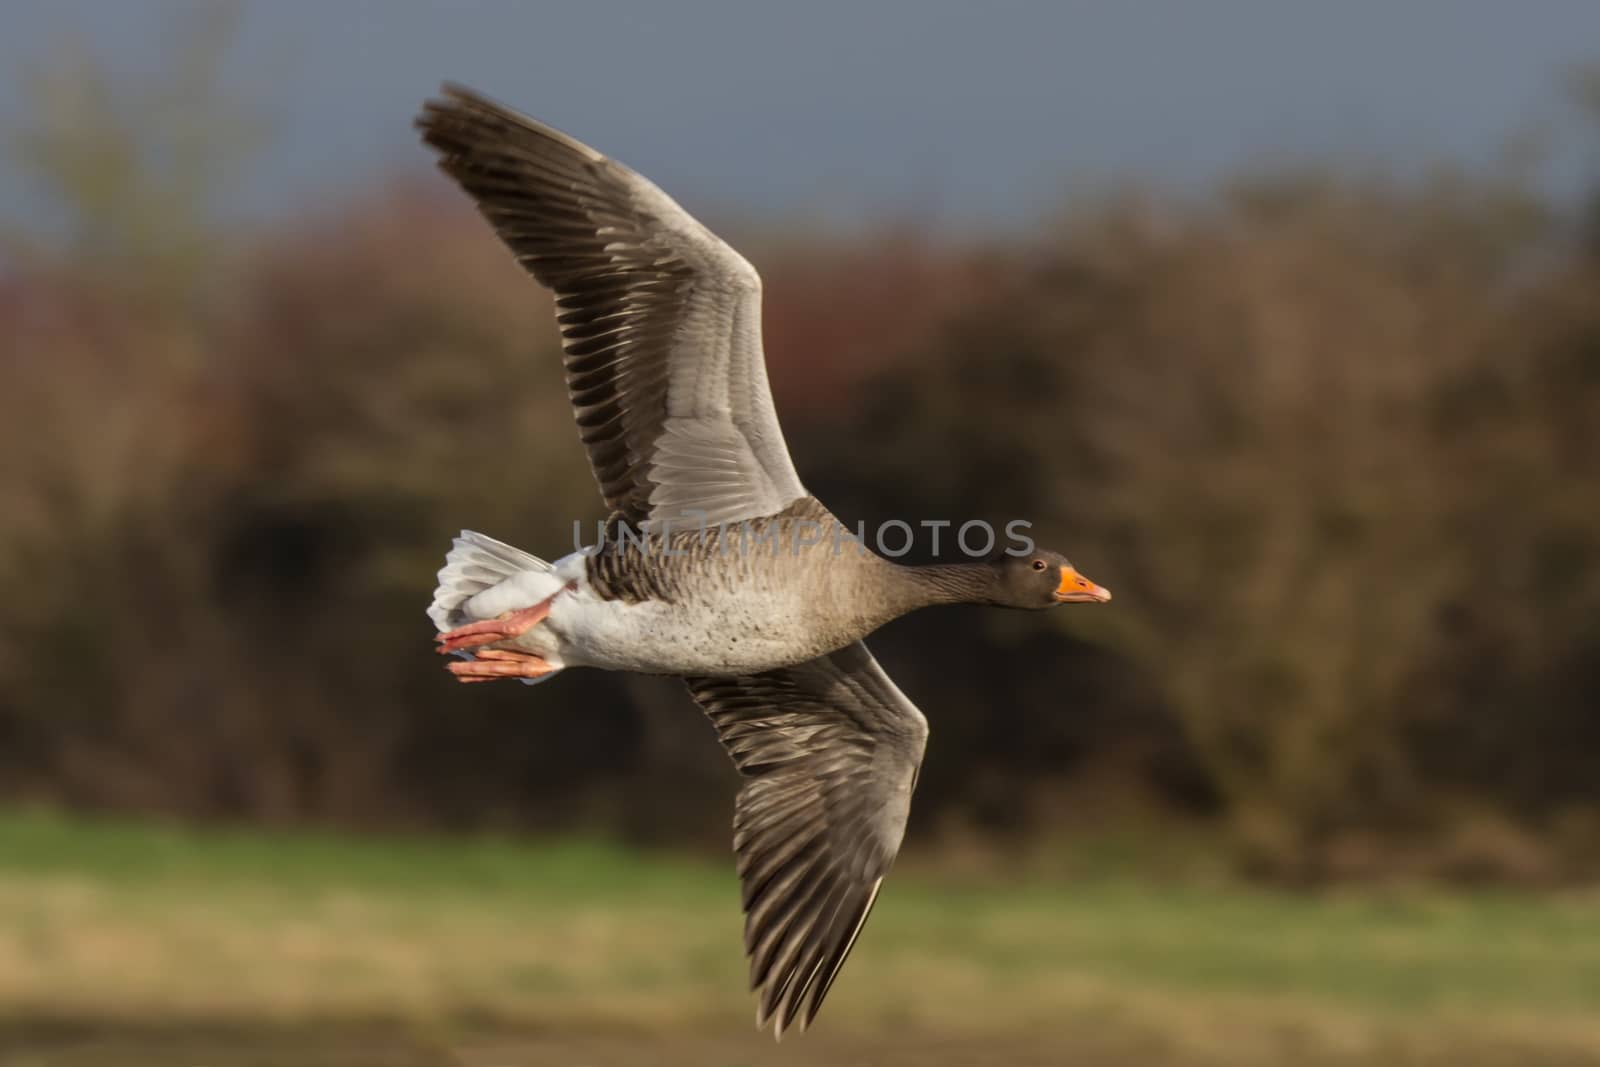 Greylag Goose (Anser anser) in flight facing right